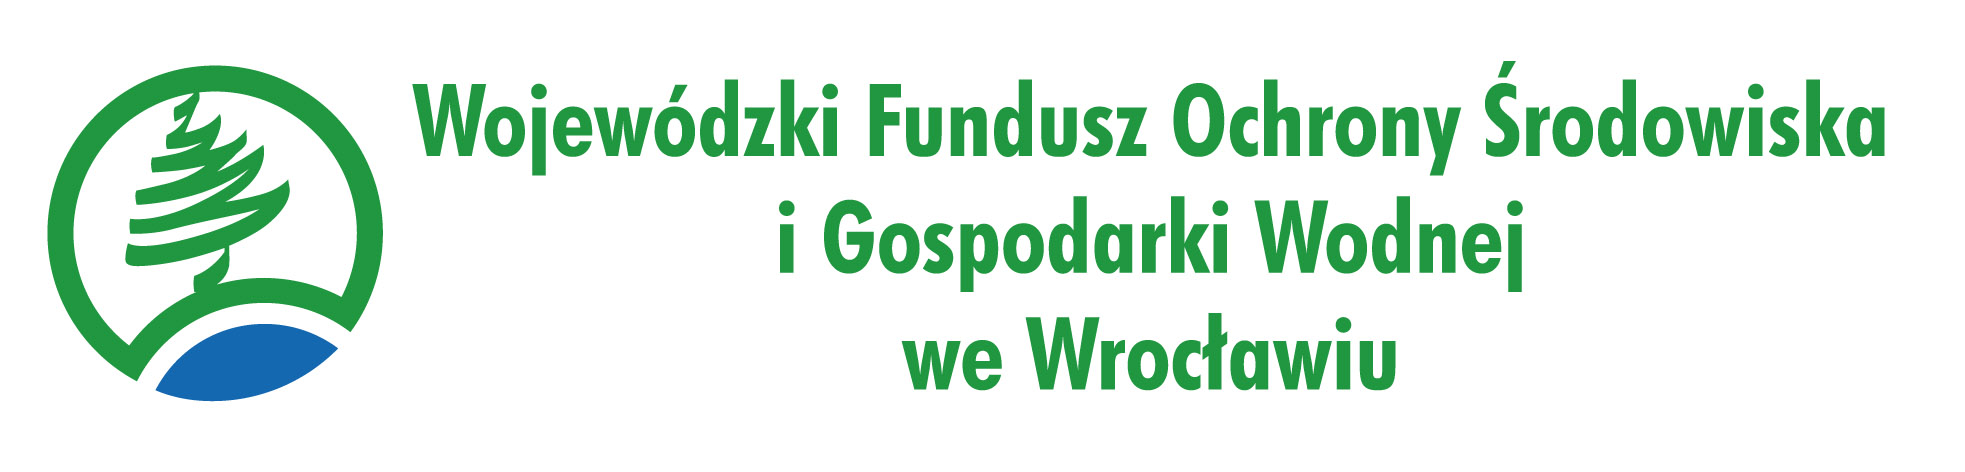 WFOS Wrocław